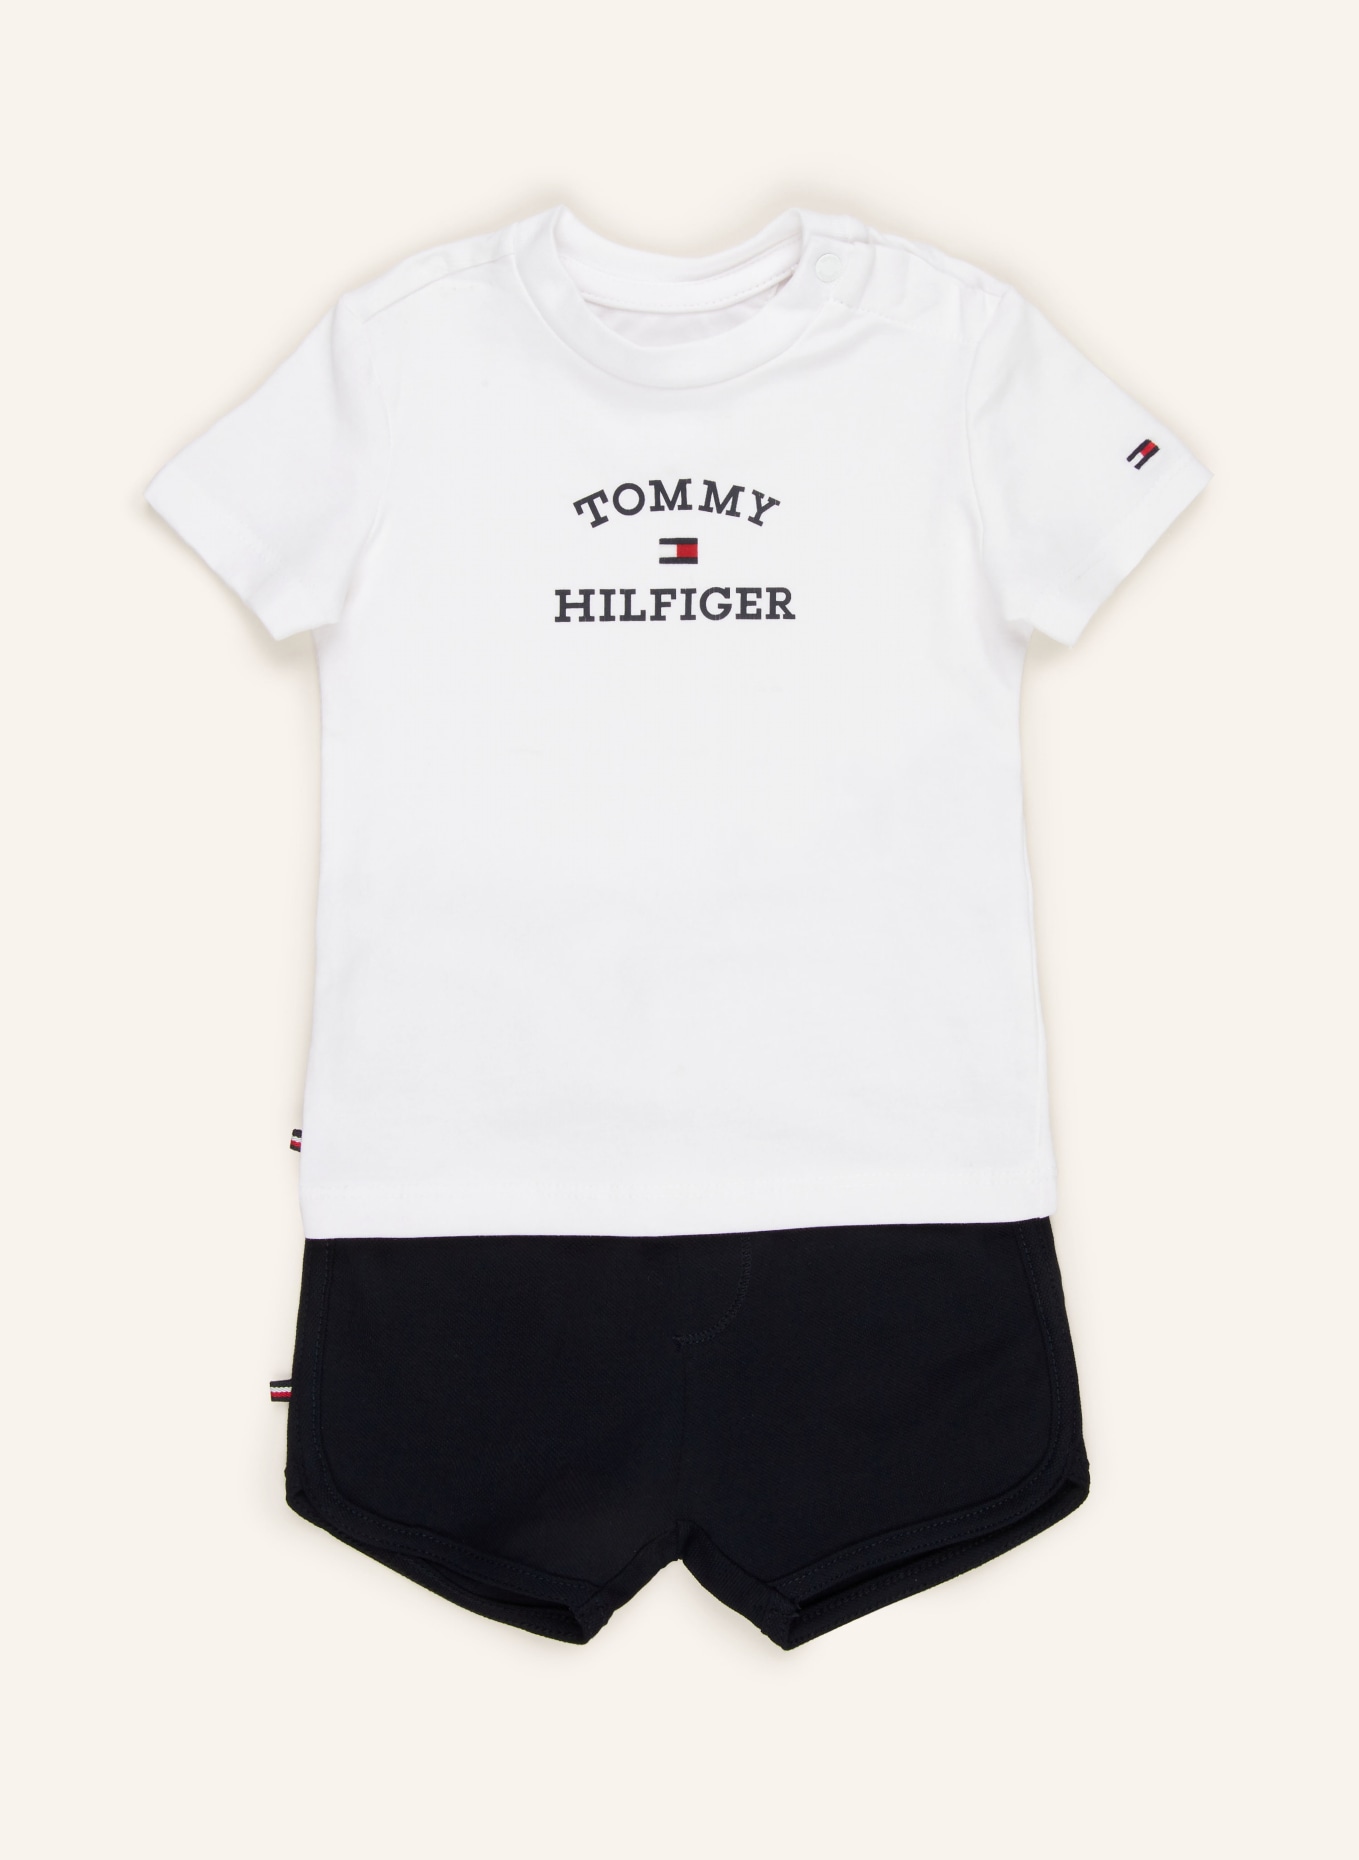 TOMMY HILFIGER Set: T-Shirt und Shorts, Farbe: WEISS/ DUNKELBLAU (Bild 1)